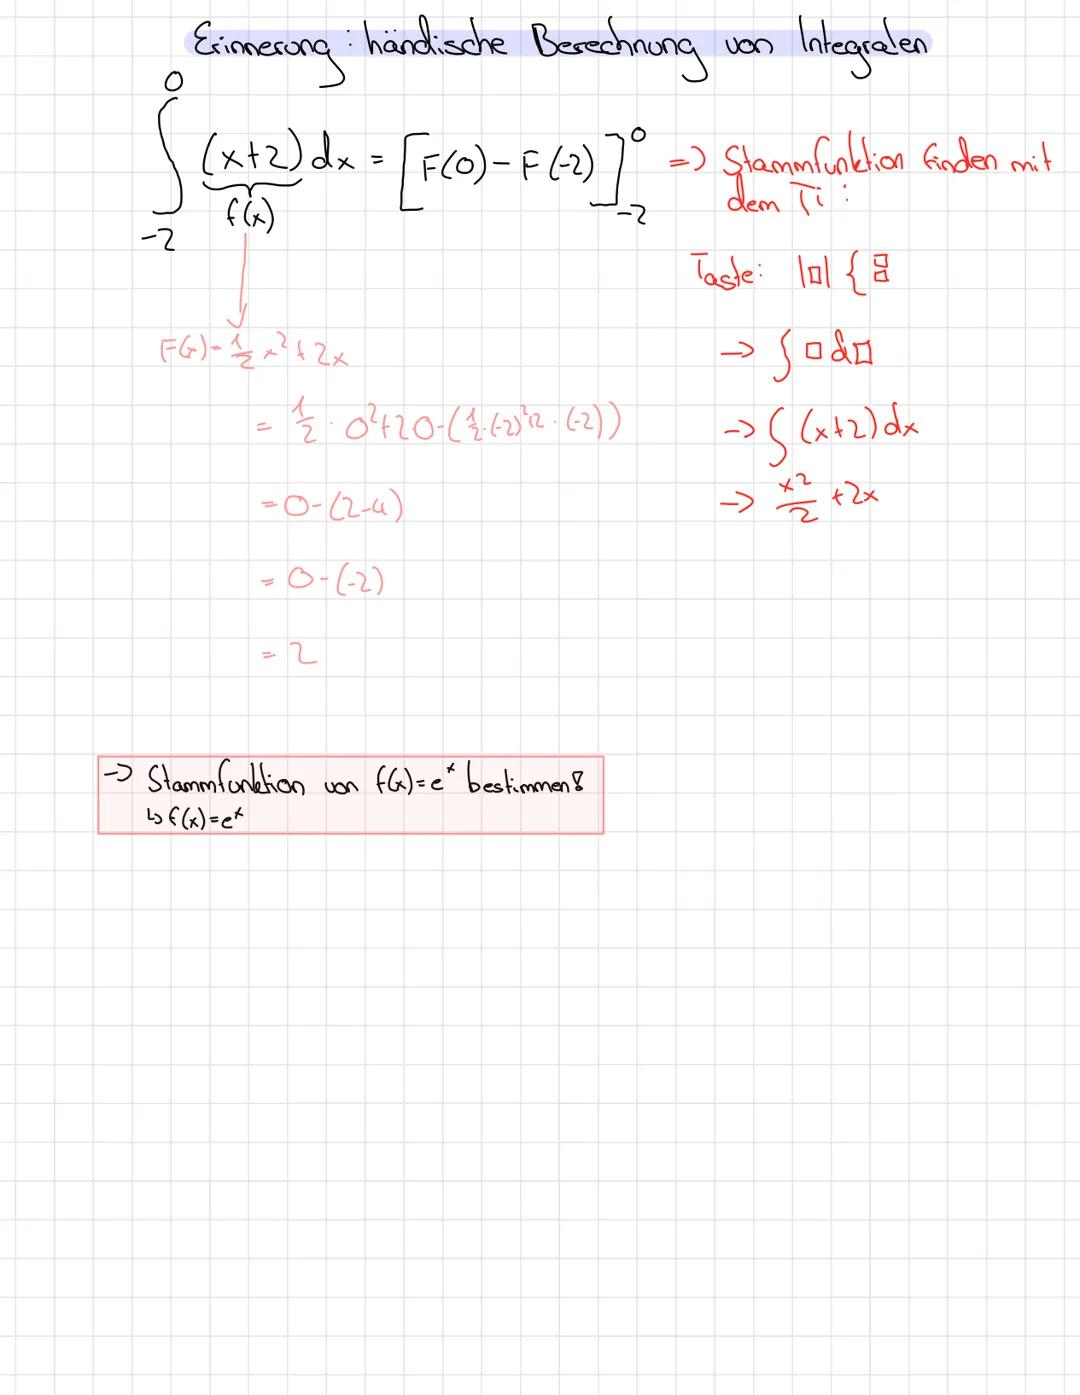 Exponentialfunktionen
Eigenschaften:
Für jede Exponentialfunktion mit y=b^x mit b>0 gilt:
- Graph verläuft oberhalb der x-Achse und durch de